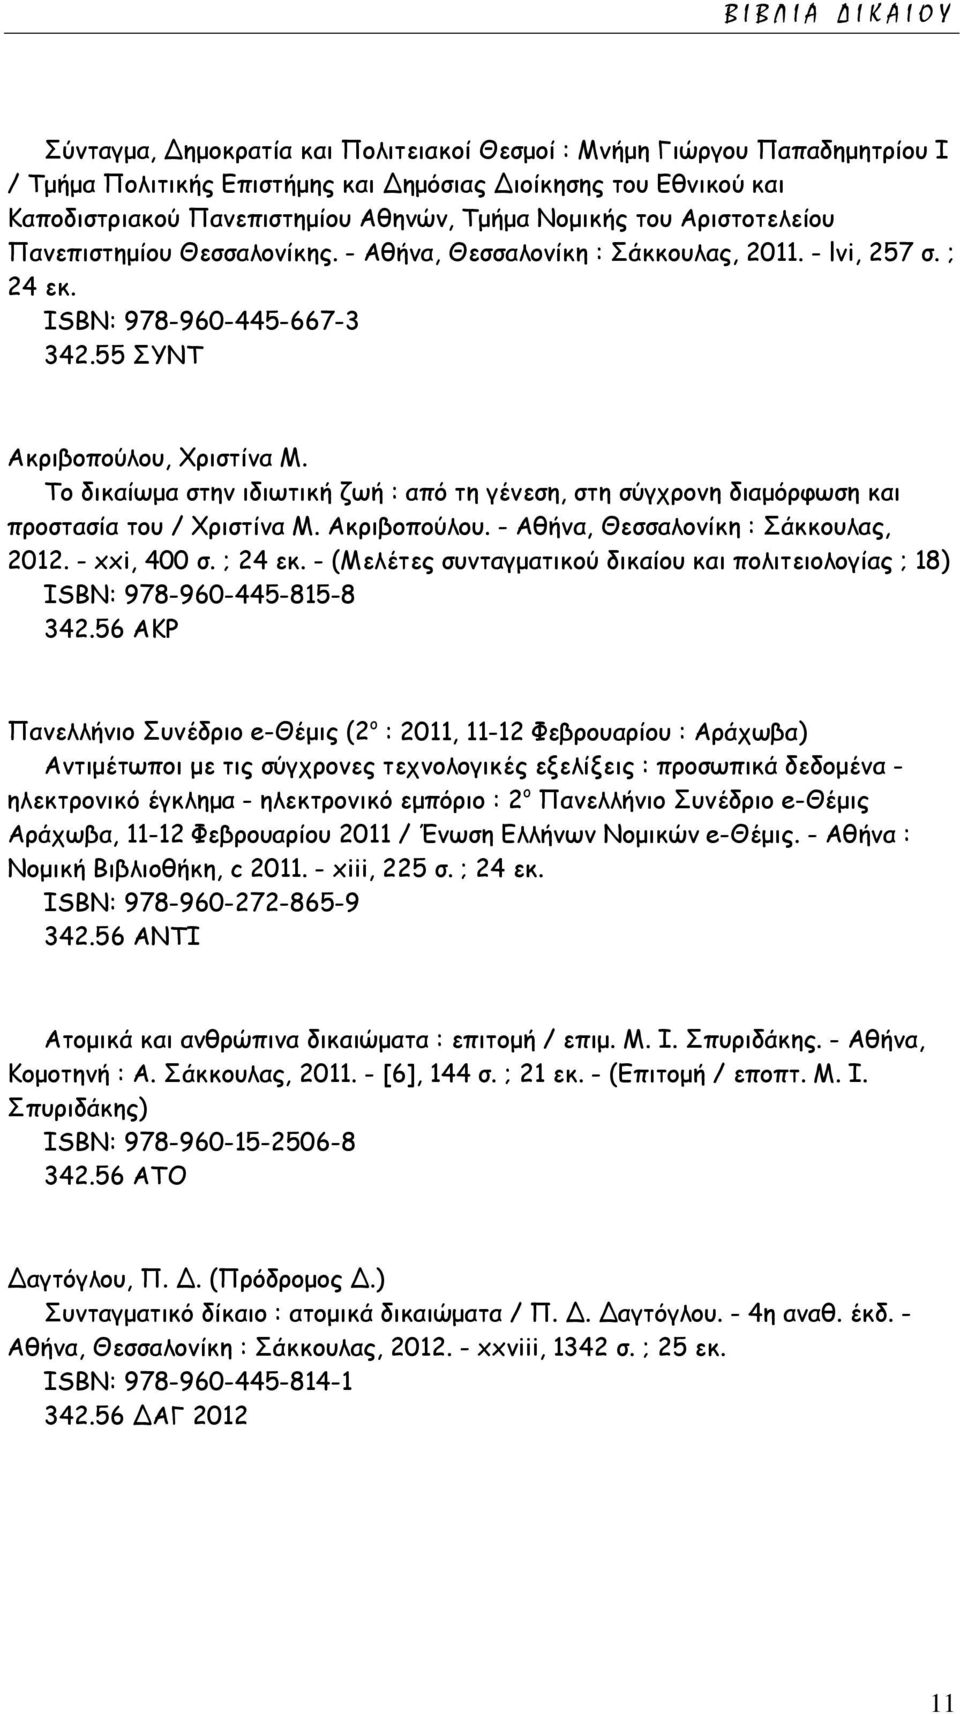 Το δικαίωμα στην ιδιωτική ζωή : από τη γένεση, στη σύγχρονη διαμόρφωση και προστασία του / Χριστίνα Μ. Ακριβοπούλου. - Αθήνα, Θεσσαλονίκη : Σάκκουλας, 2012. - xxi, 400 σ. ; 24 εκ.